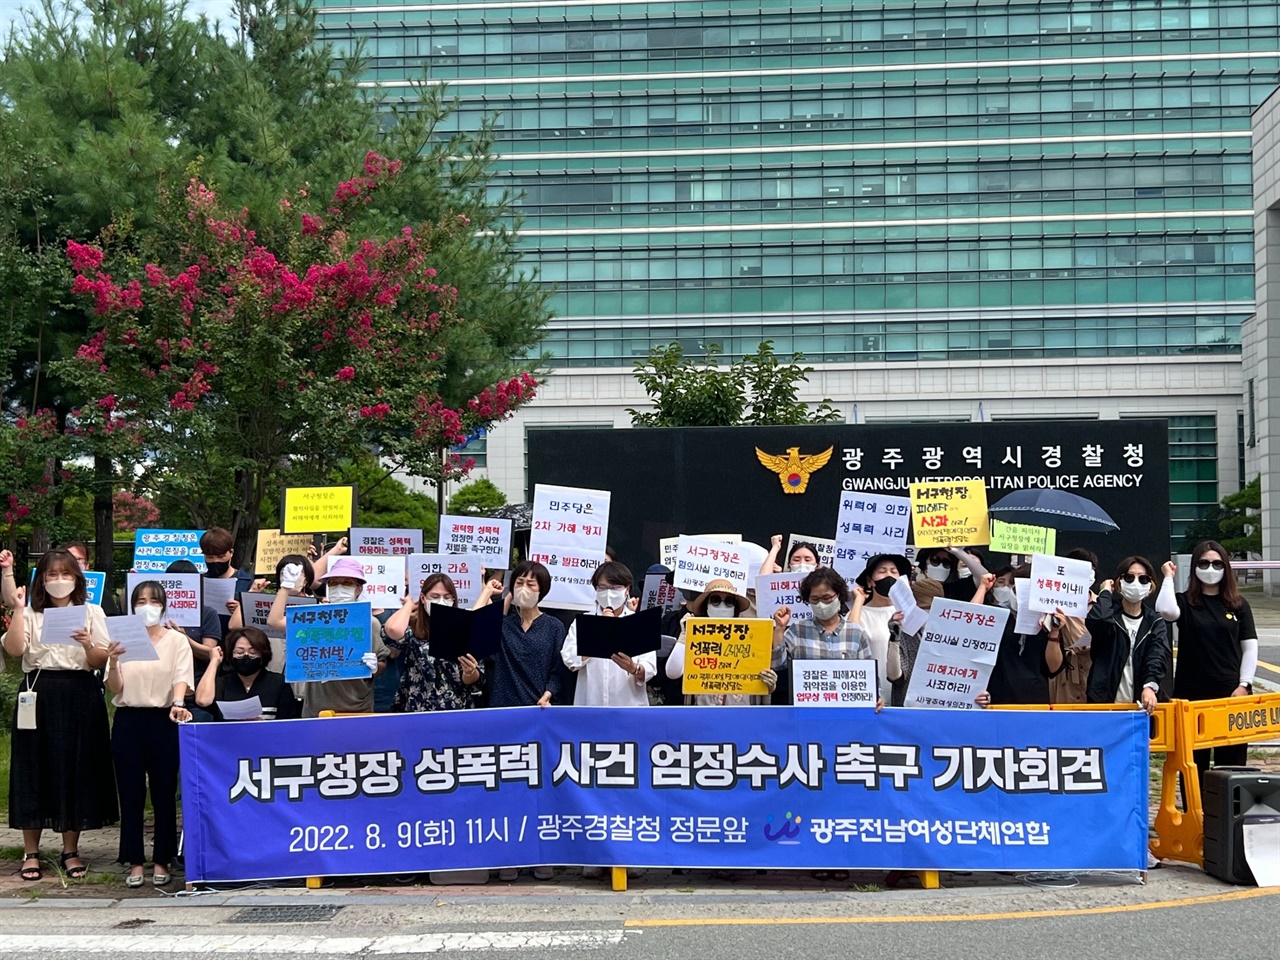 9일, 광주전남여성단체연합이 광주광역시경찰청 앞에서 기자회견을 진행하고 있다.